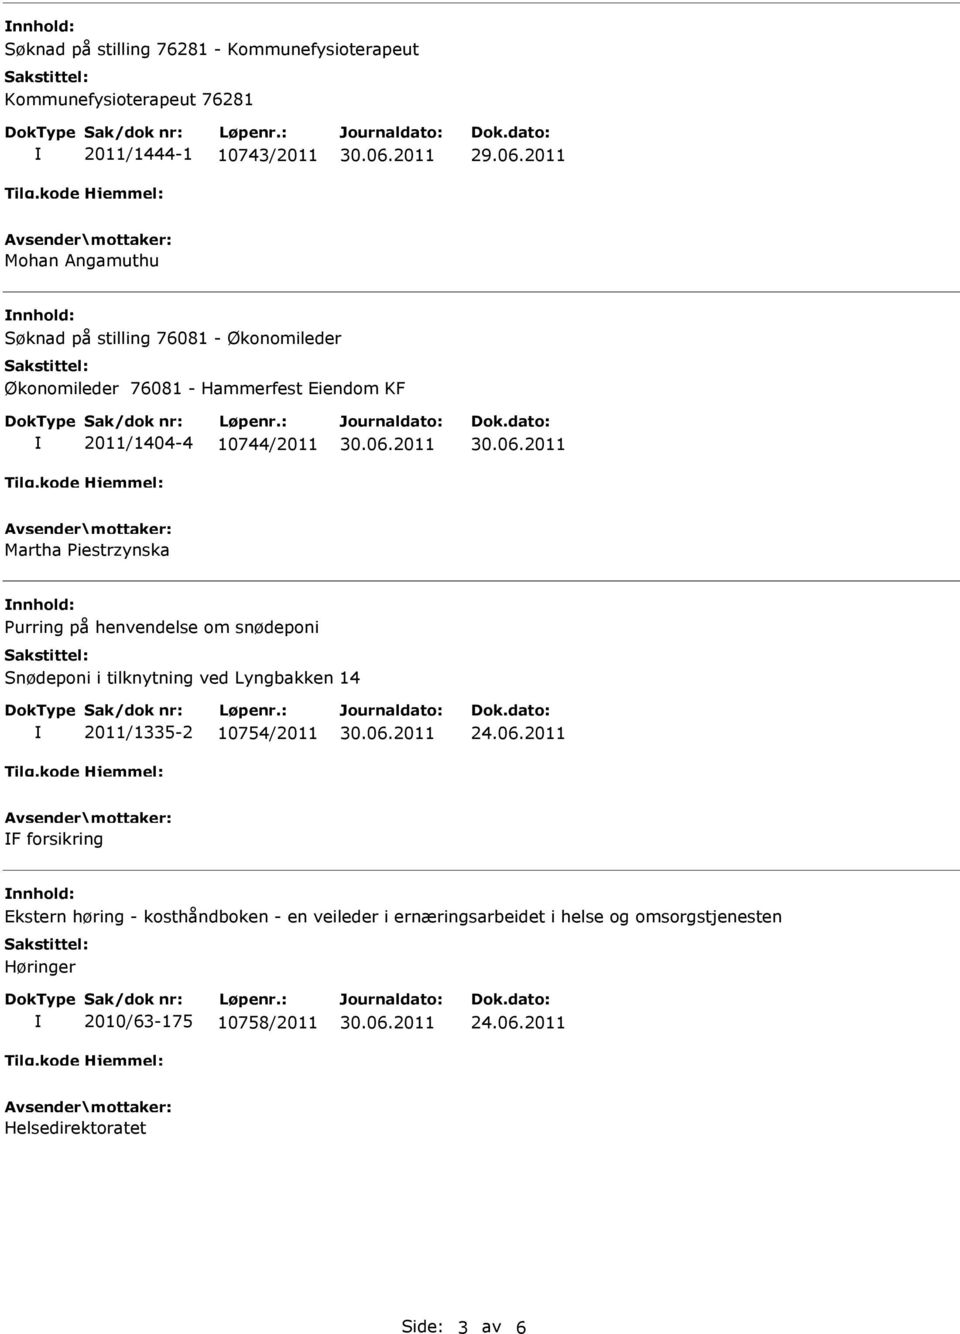 henvendelse om snødeponi Snødeponi i tilknytning ved Lyngbakken 14 2011/1335-2 10754/2011 24.06.